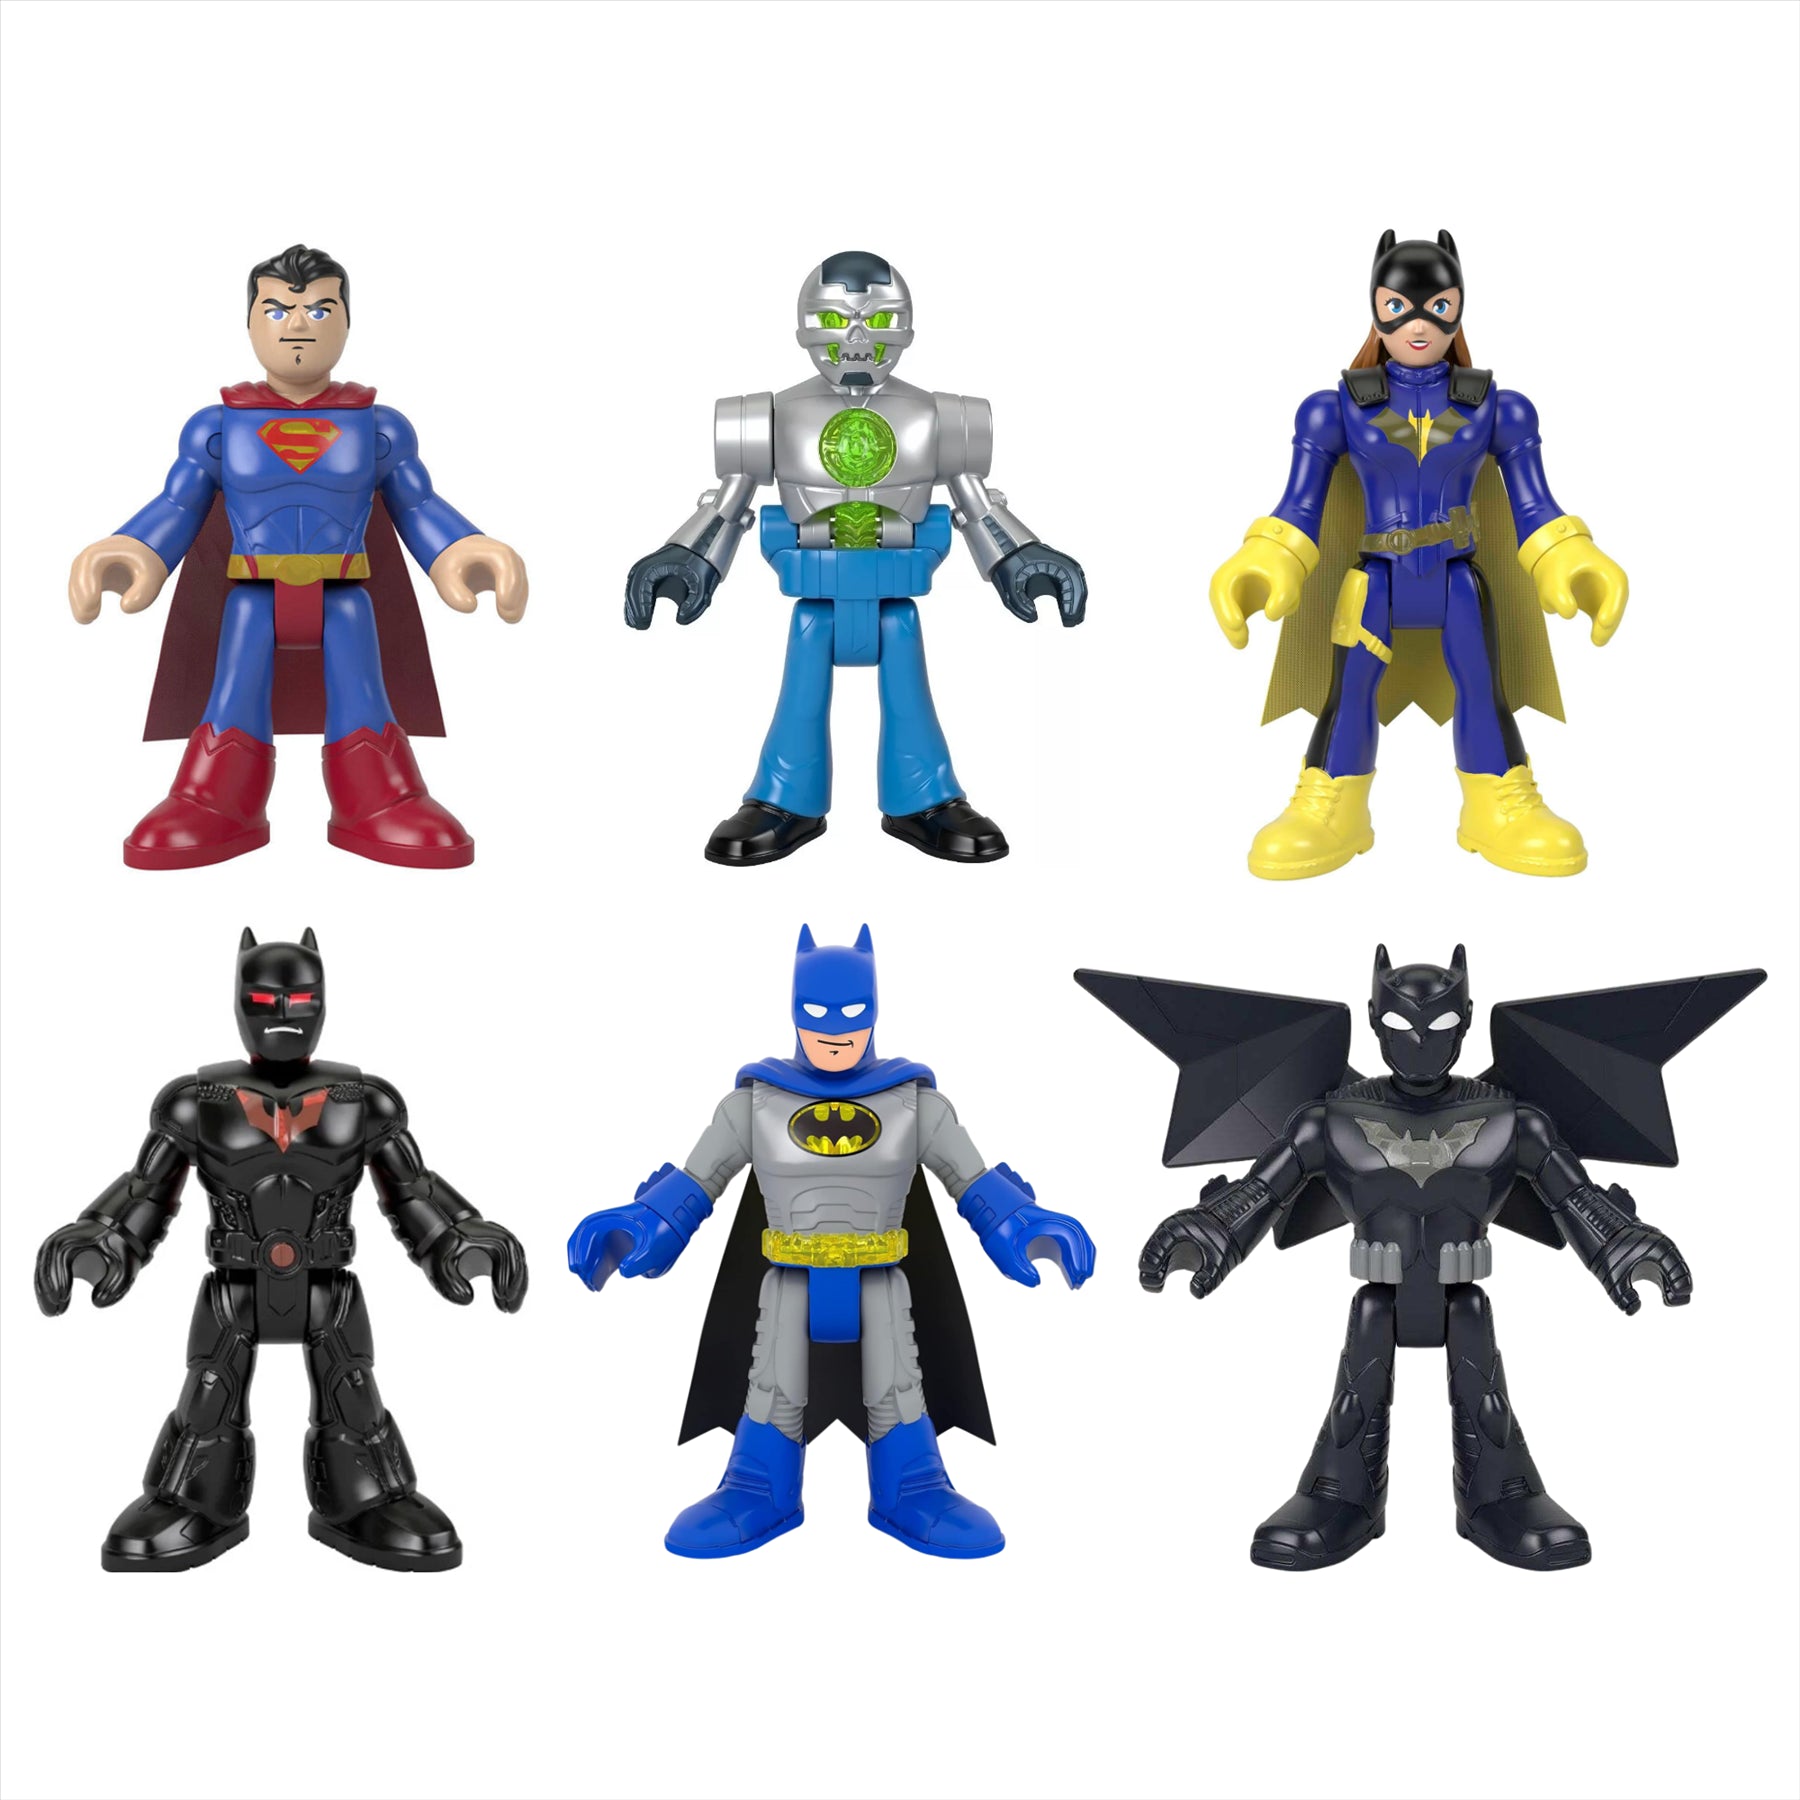 Imaginext DC Super Friends Miniature Action Figure Play Toys - Set of 6